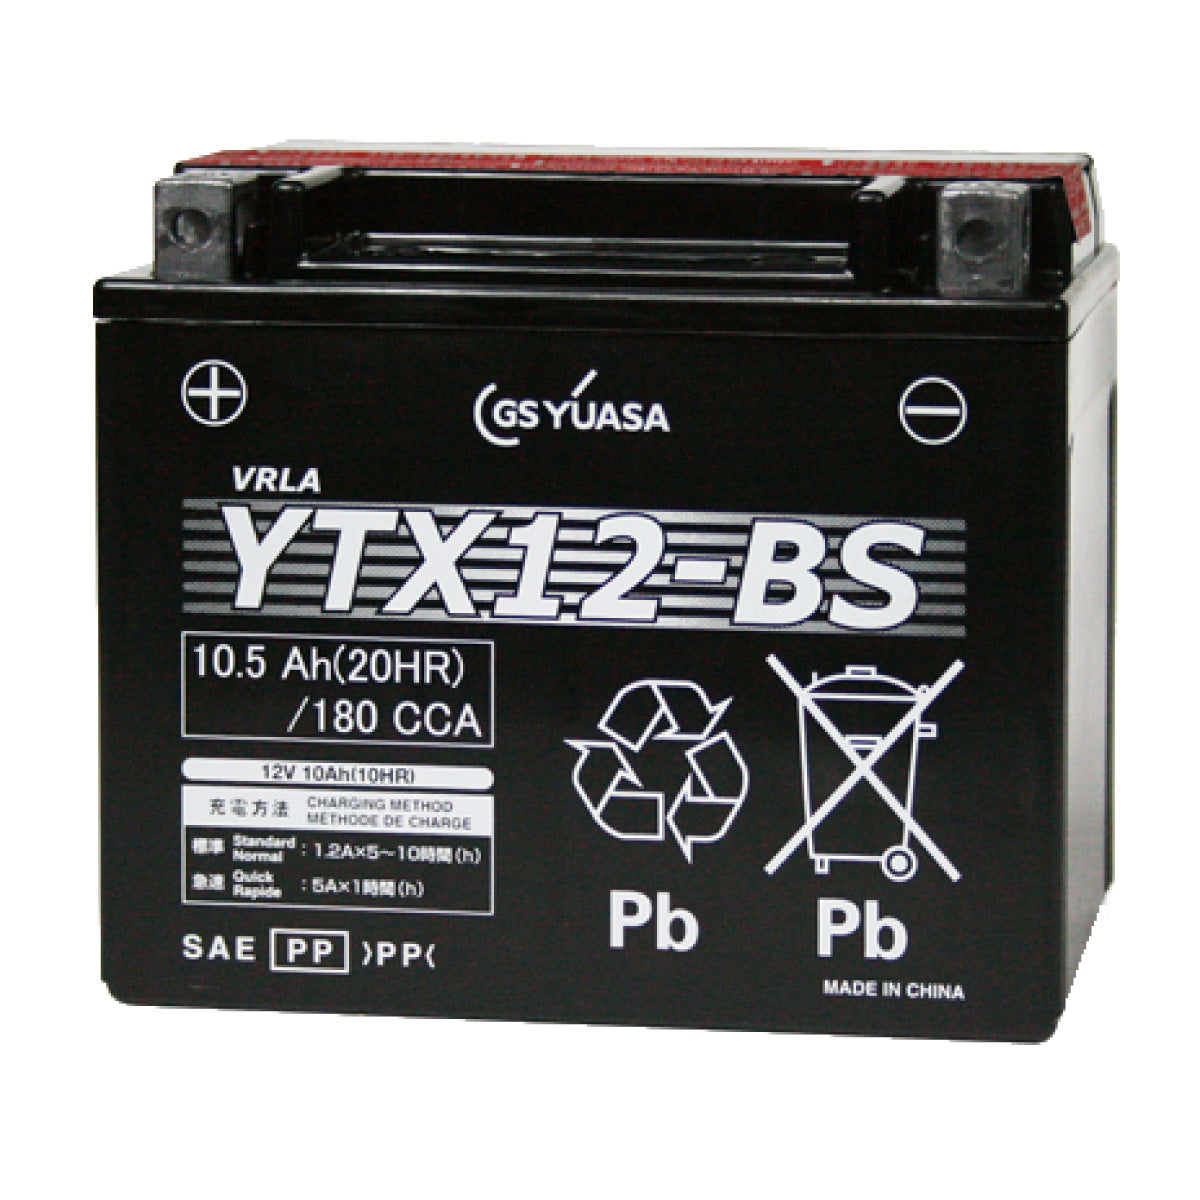 【新品 送料込み】YTX12-BS バッテリー 台湾ユアサ バイク YUASA